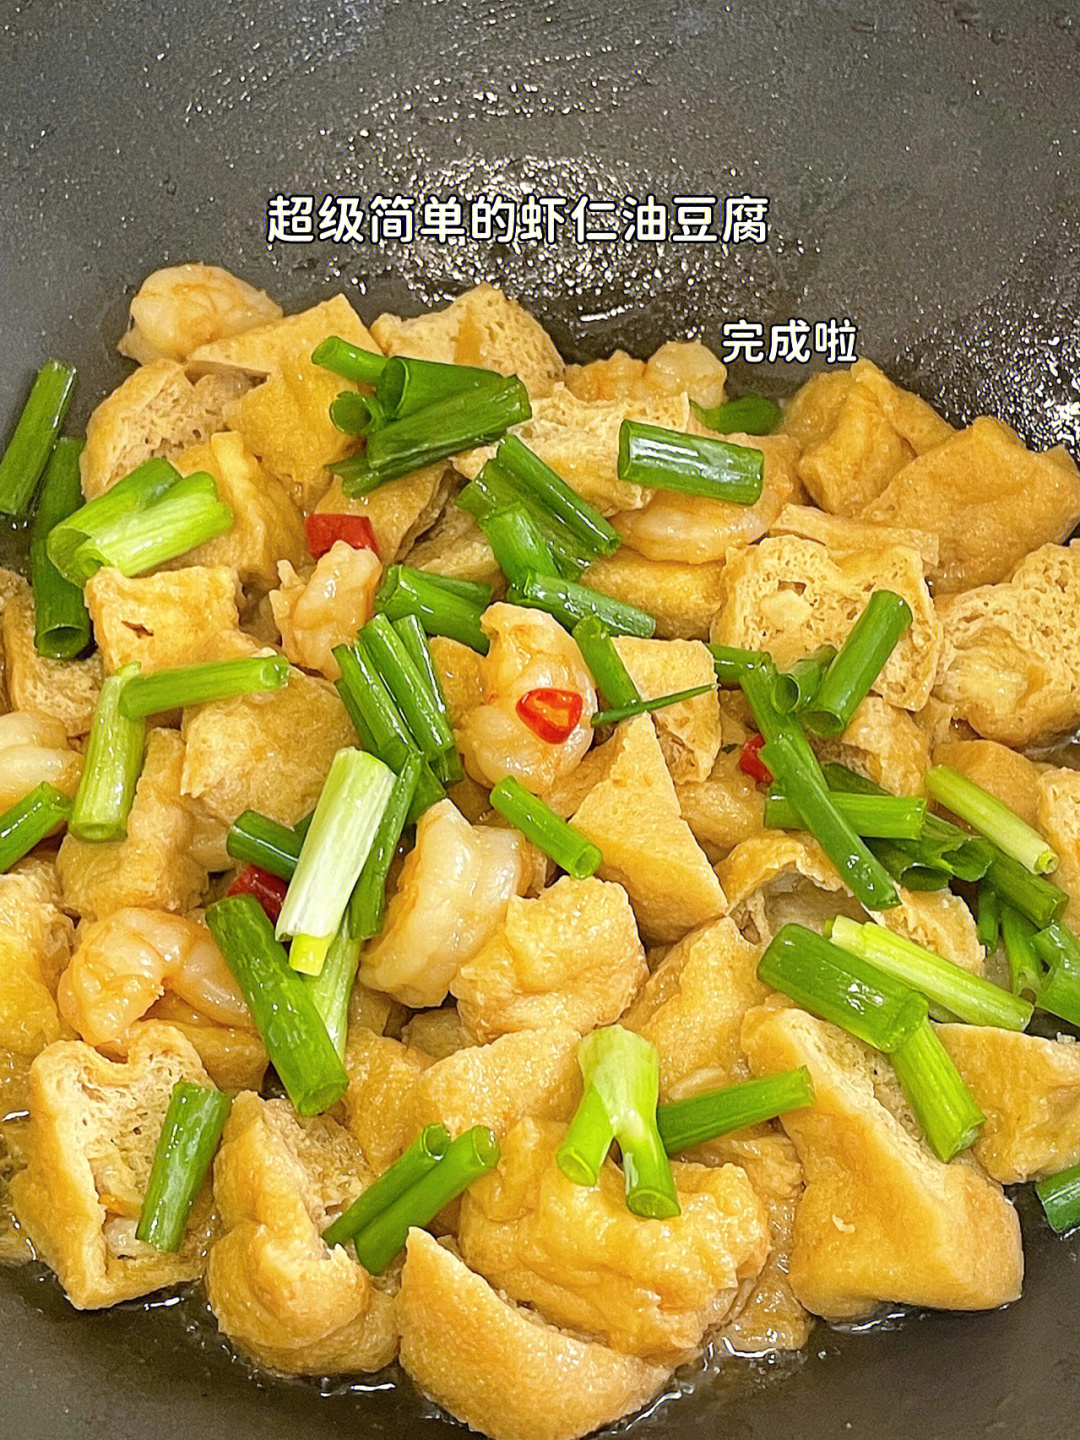 虾仁炒油豆腐超级简单美味